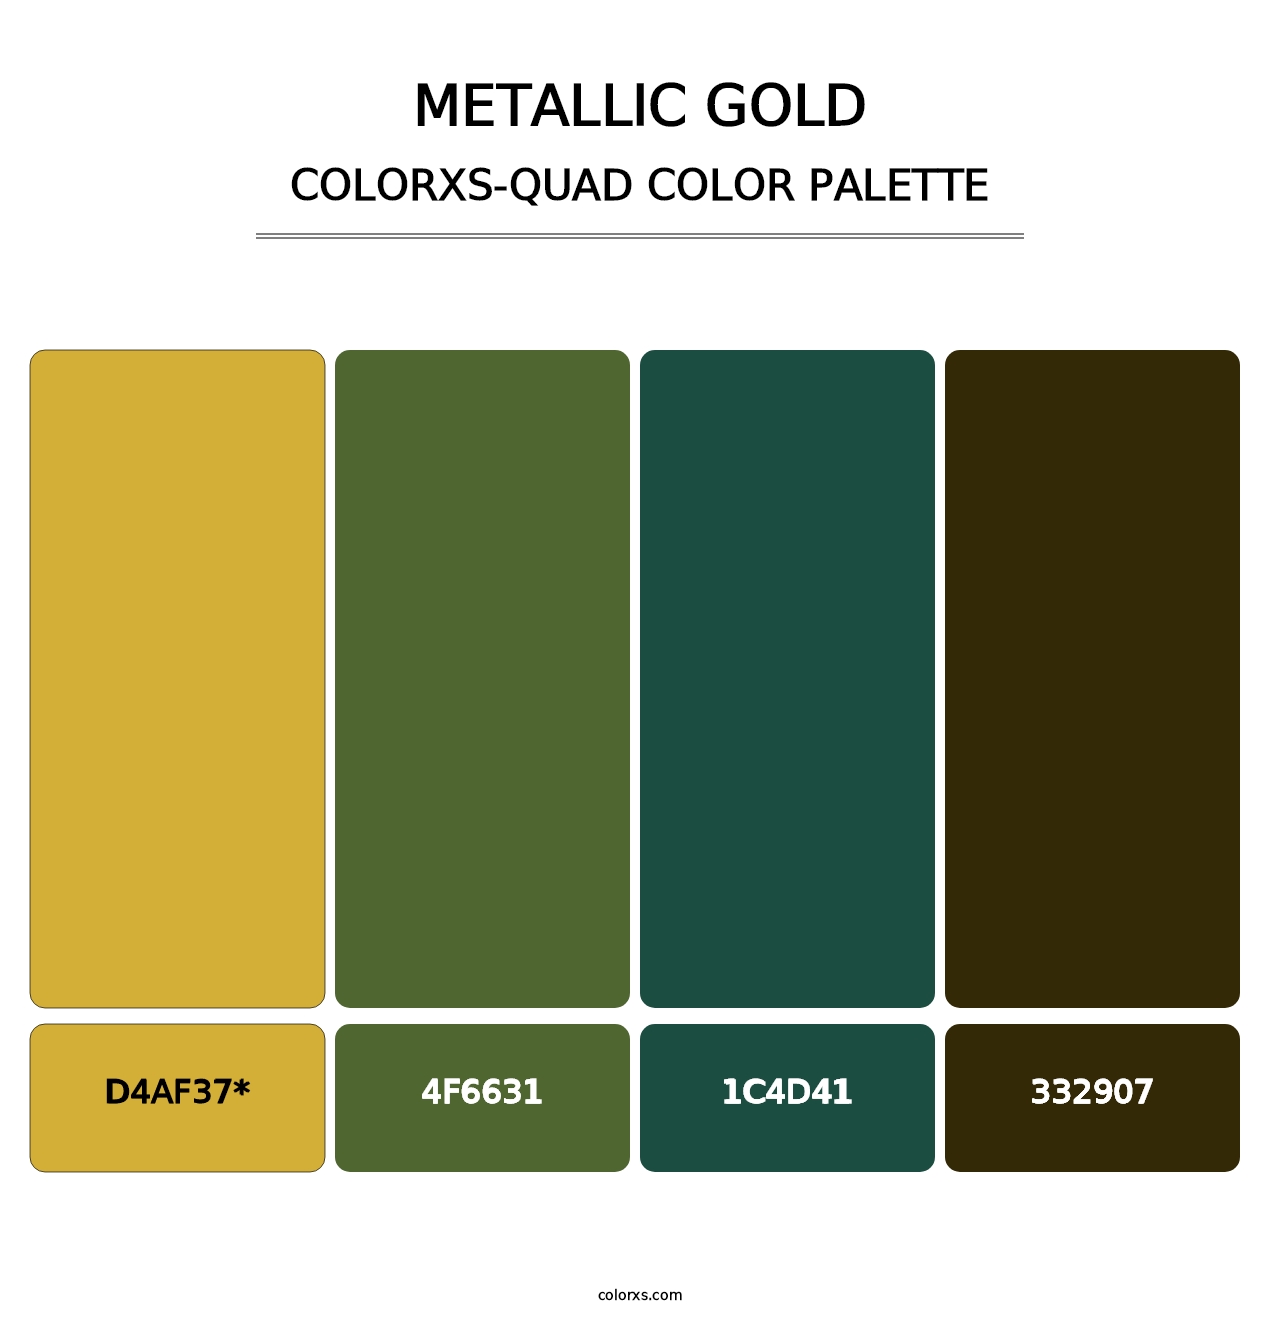 Metallic Gold - Colorxs Quad Palette